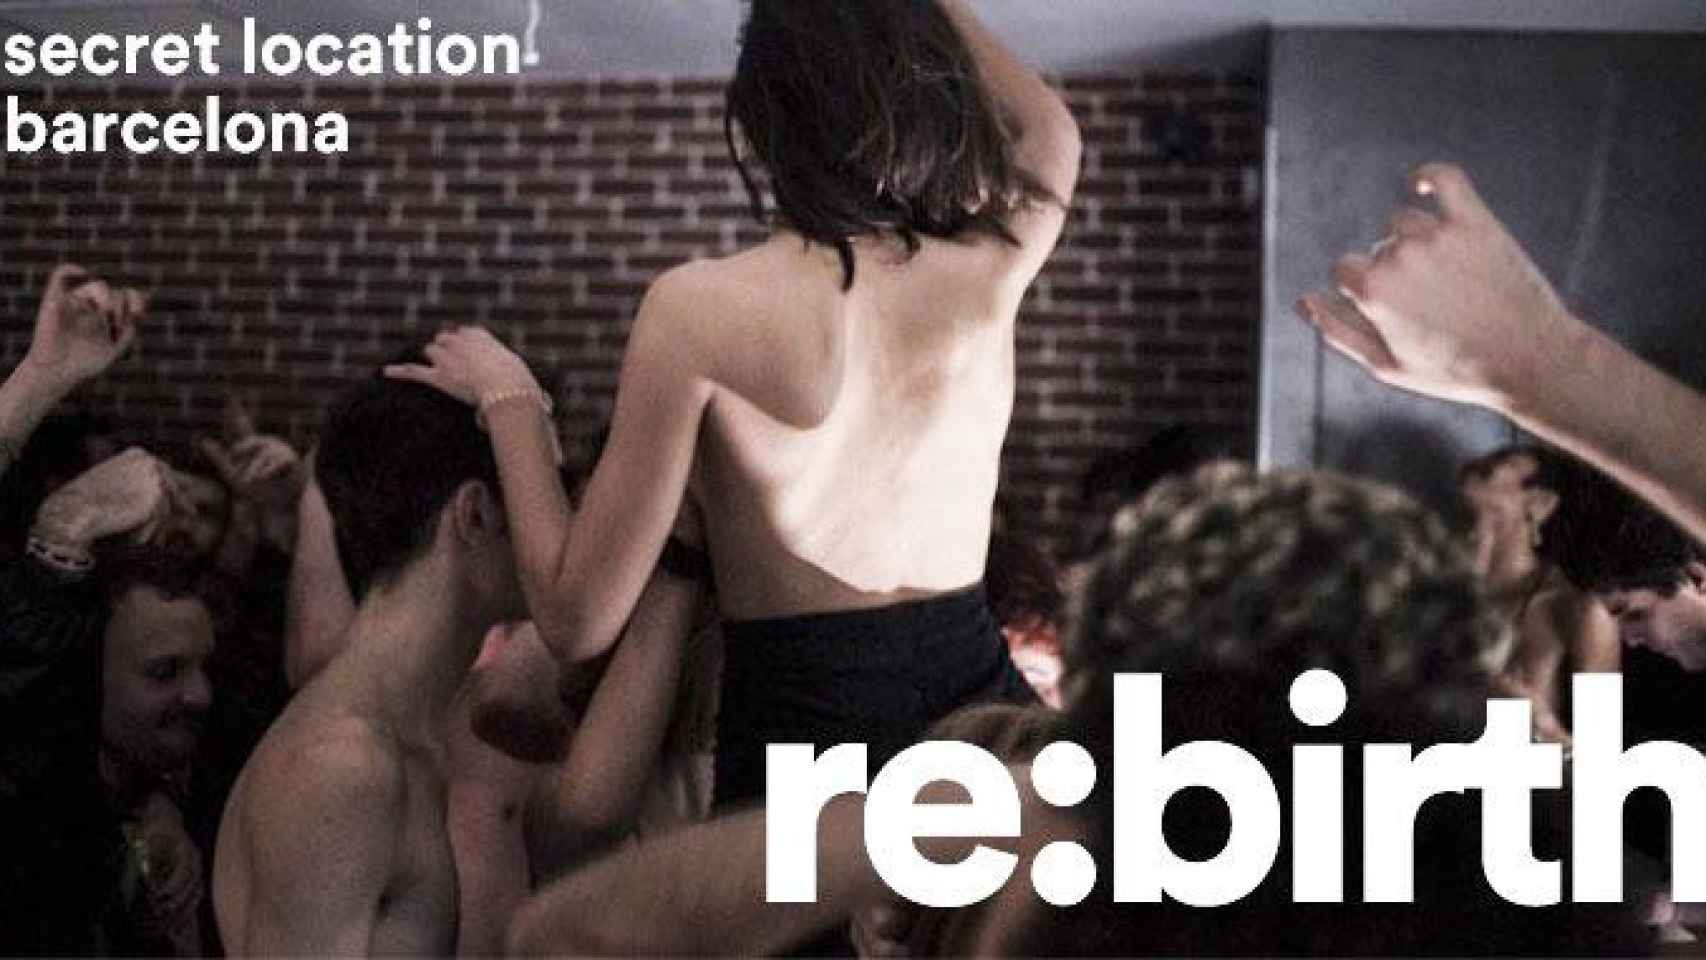 Cartel promocional de las orgías Re:birth en Barcelona, inspiradas en la mística berlinesa / CG